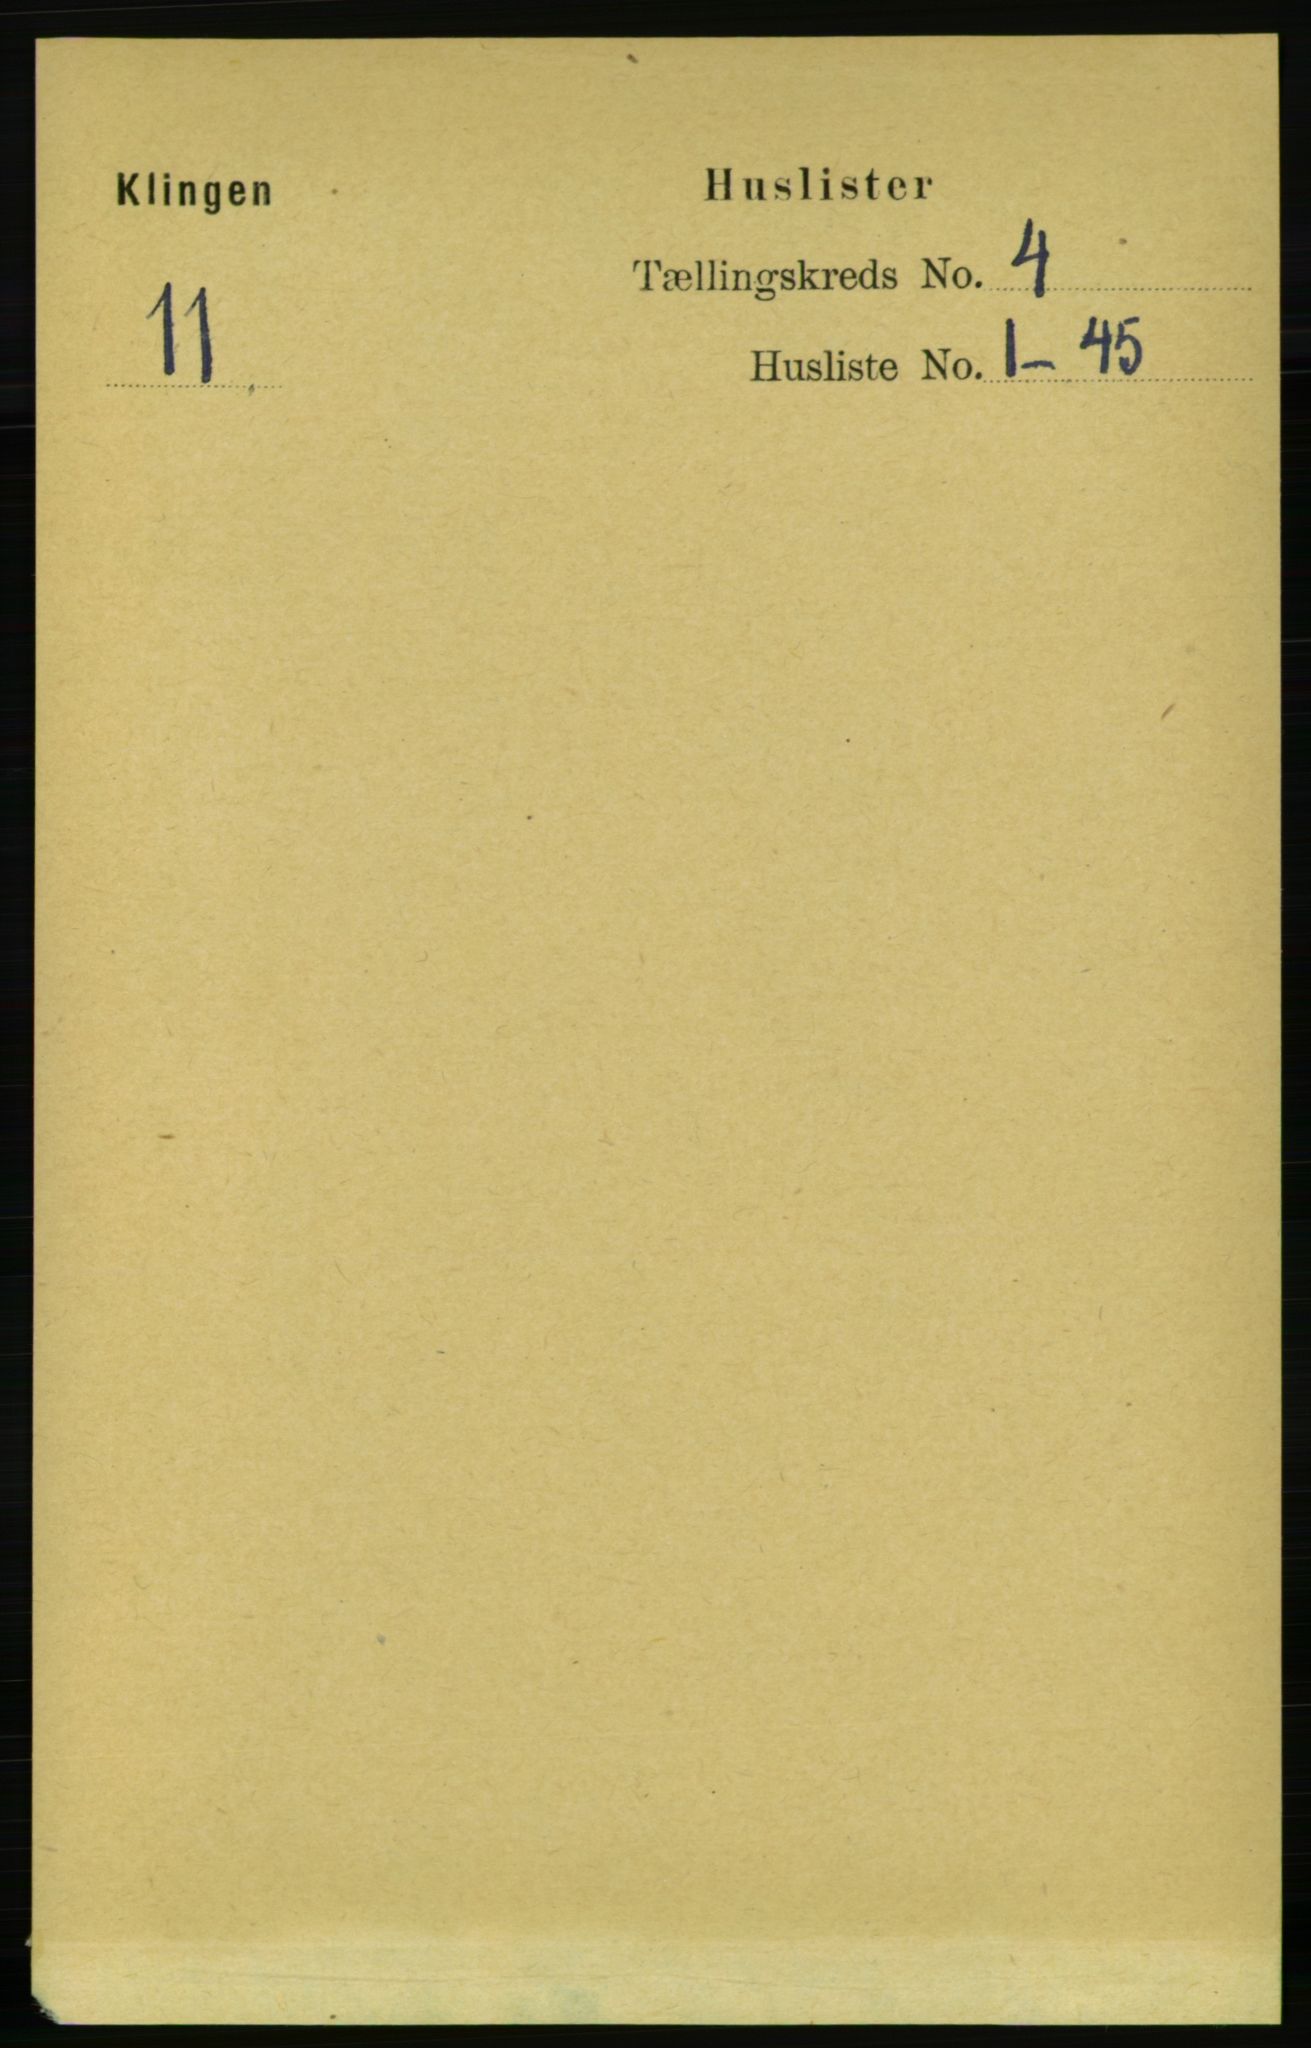 RA, Folketelling 1891 for 1746 Klinga herred, 1891, s. 1102